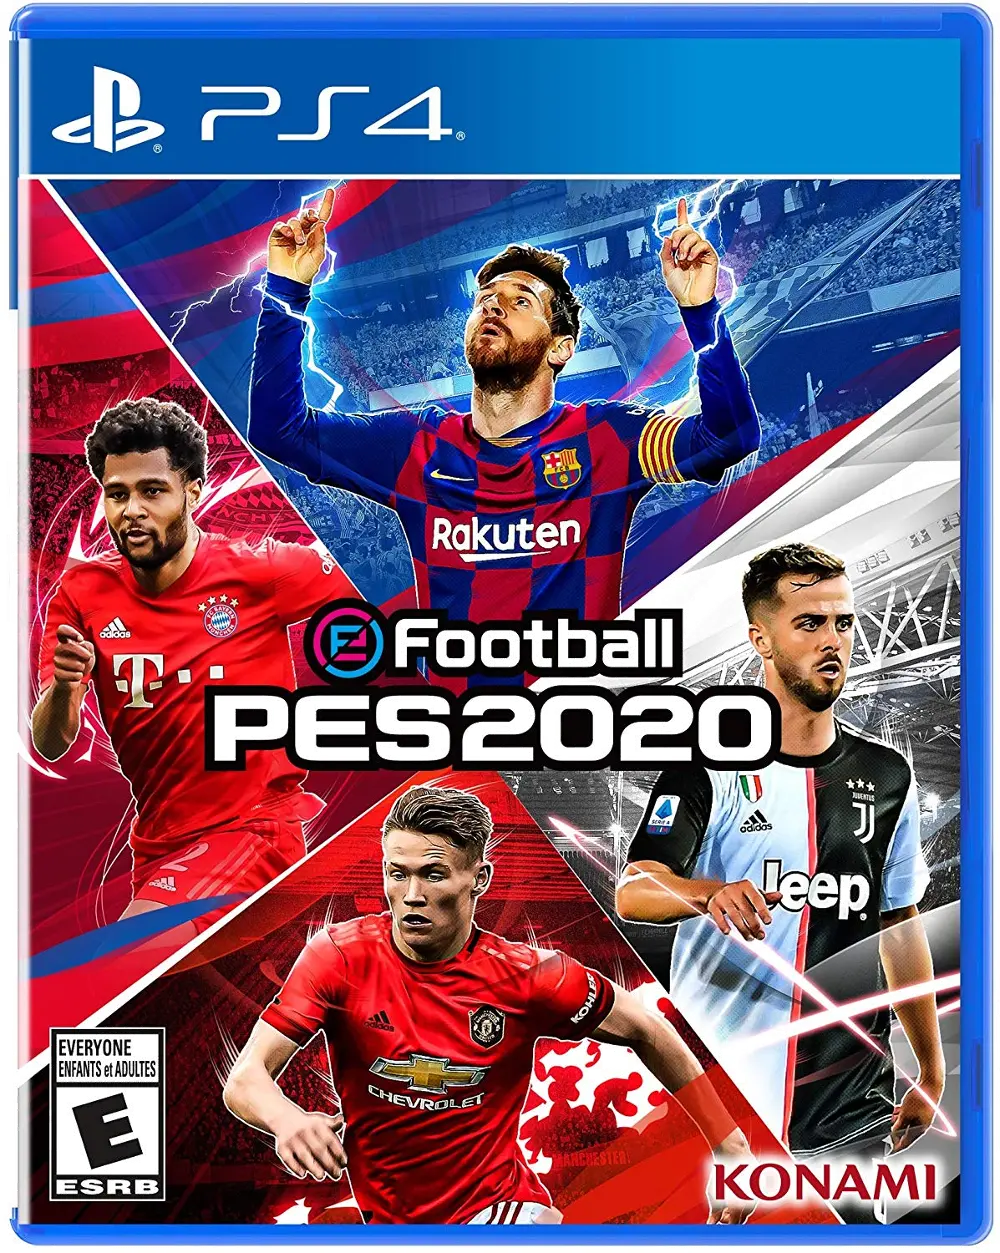 PS4/PRO_EVO_SOCCER eFootball Pro Evolution Soccer 2020 - PS4-1